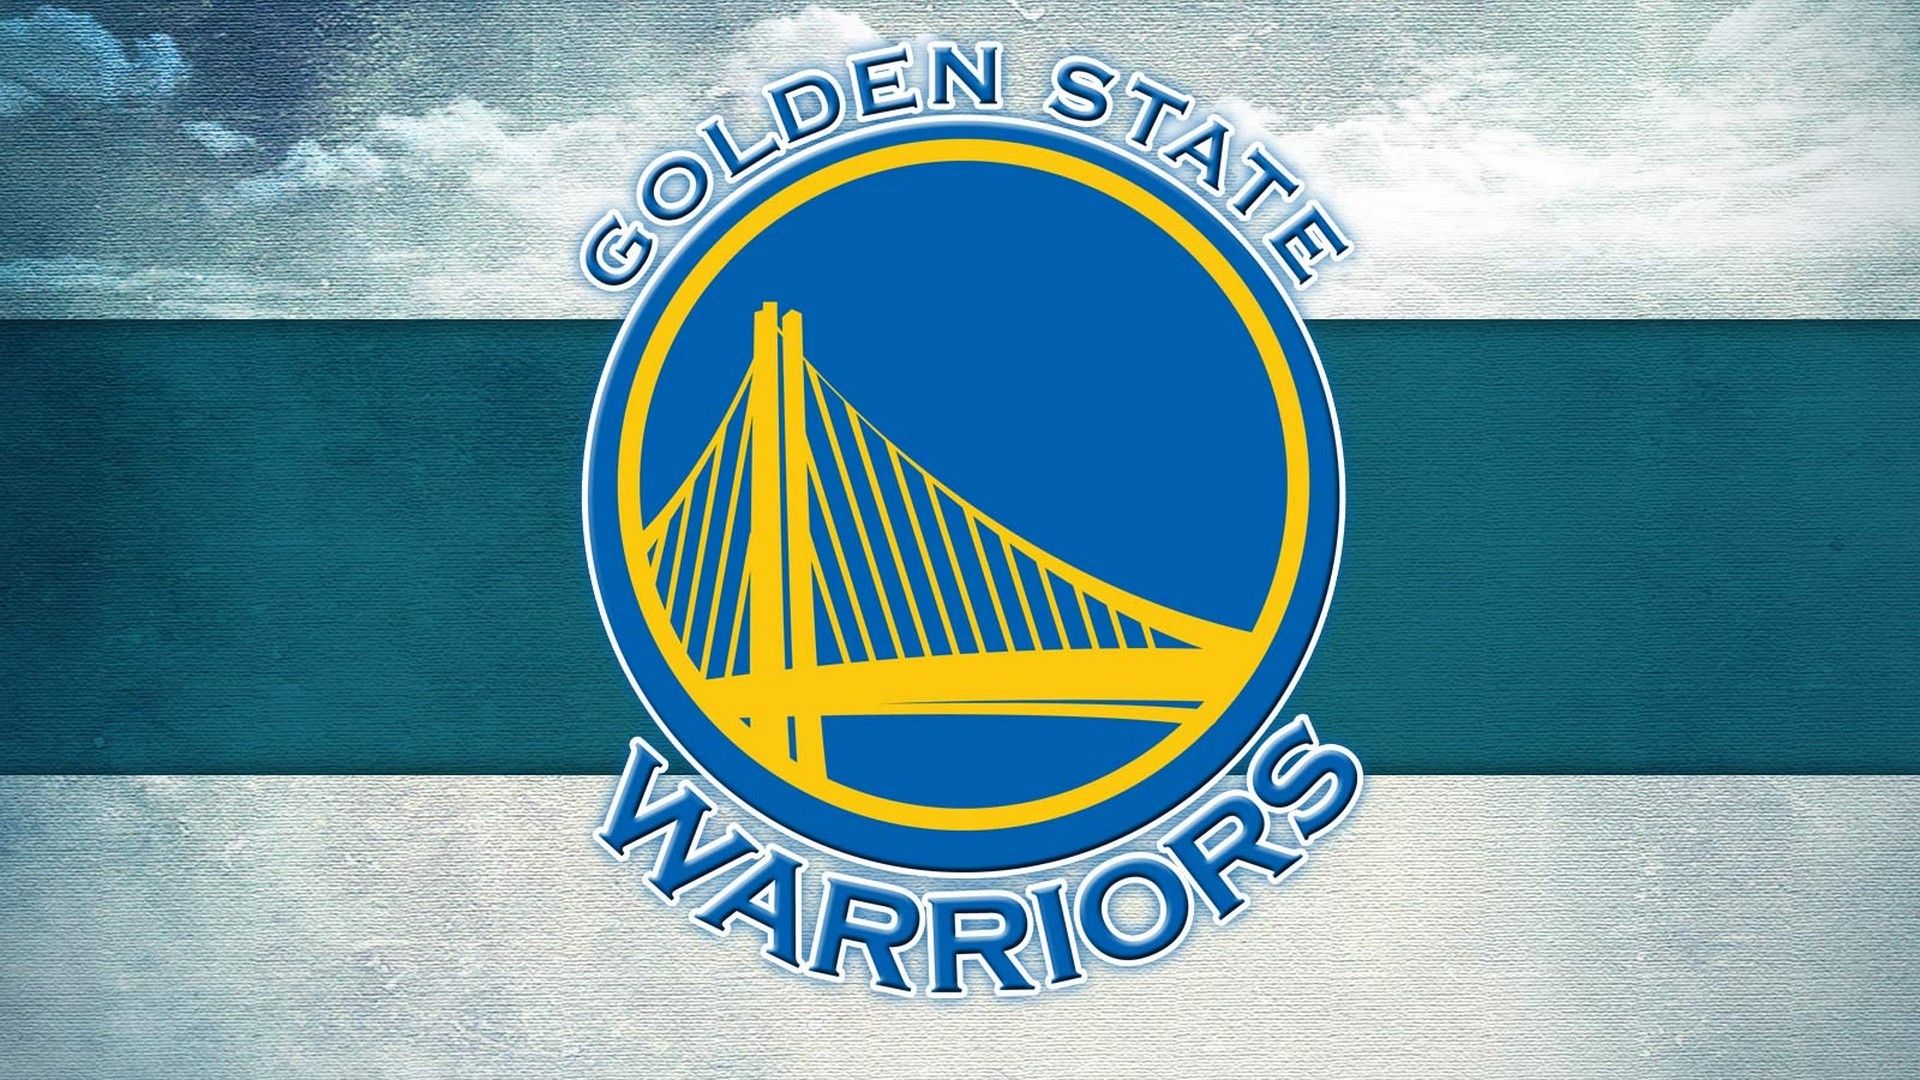 Background Warriors HD Basketball Wallpaper. Golden state warriors wallpaper, Golden state warriors logo, Warriors wallpaper